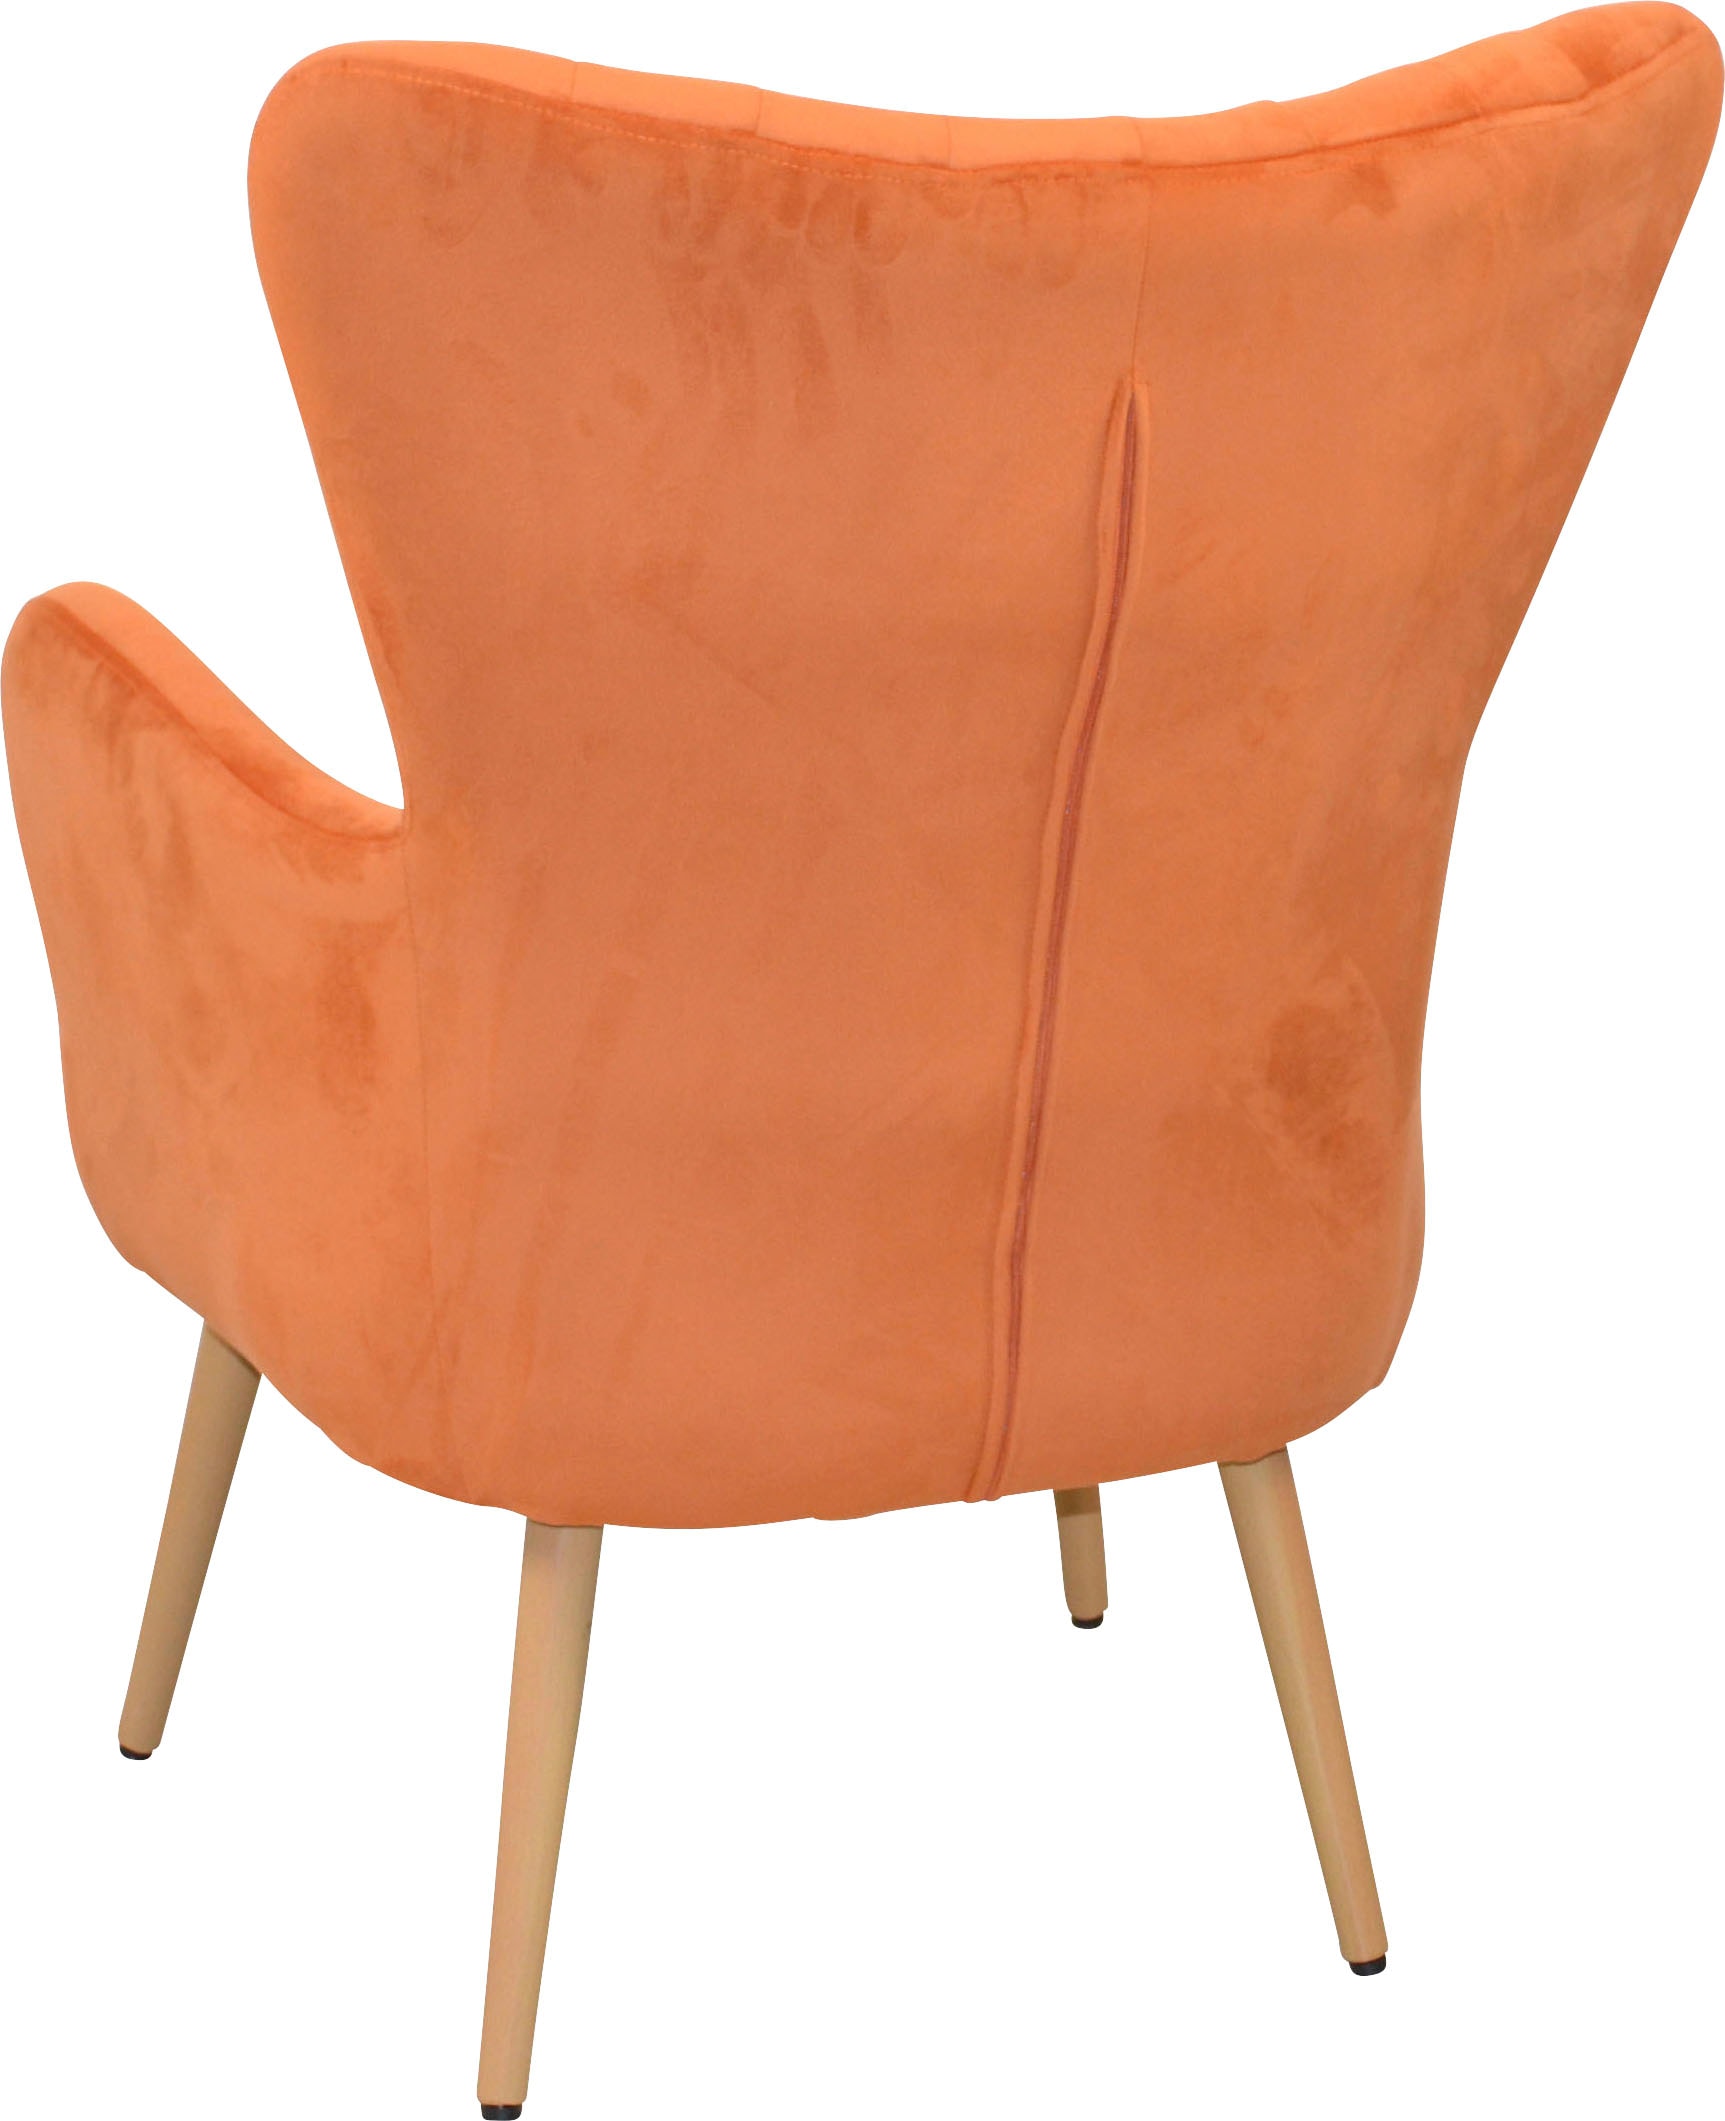 Home affaire Sessel, Polstersessel mit Beinen aus Stahlrohr, holzfarben natur lackiert